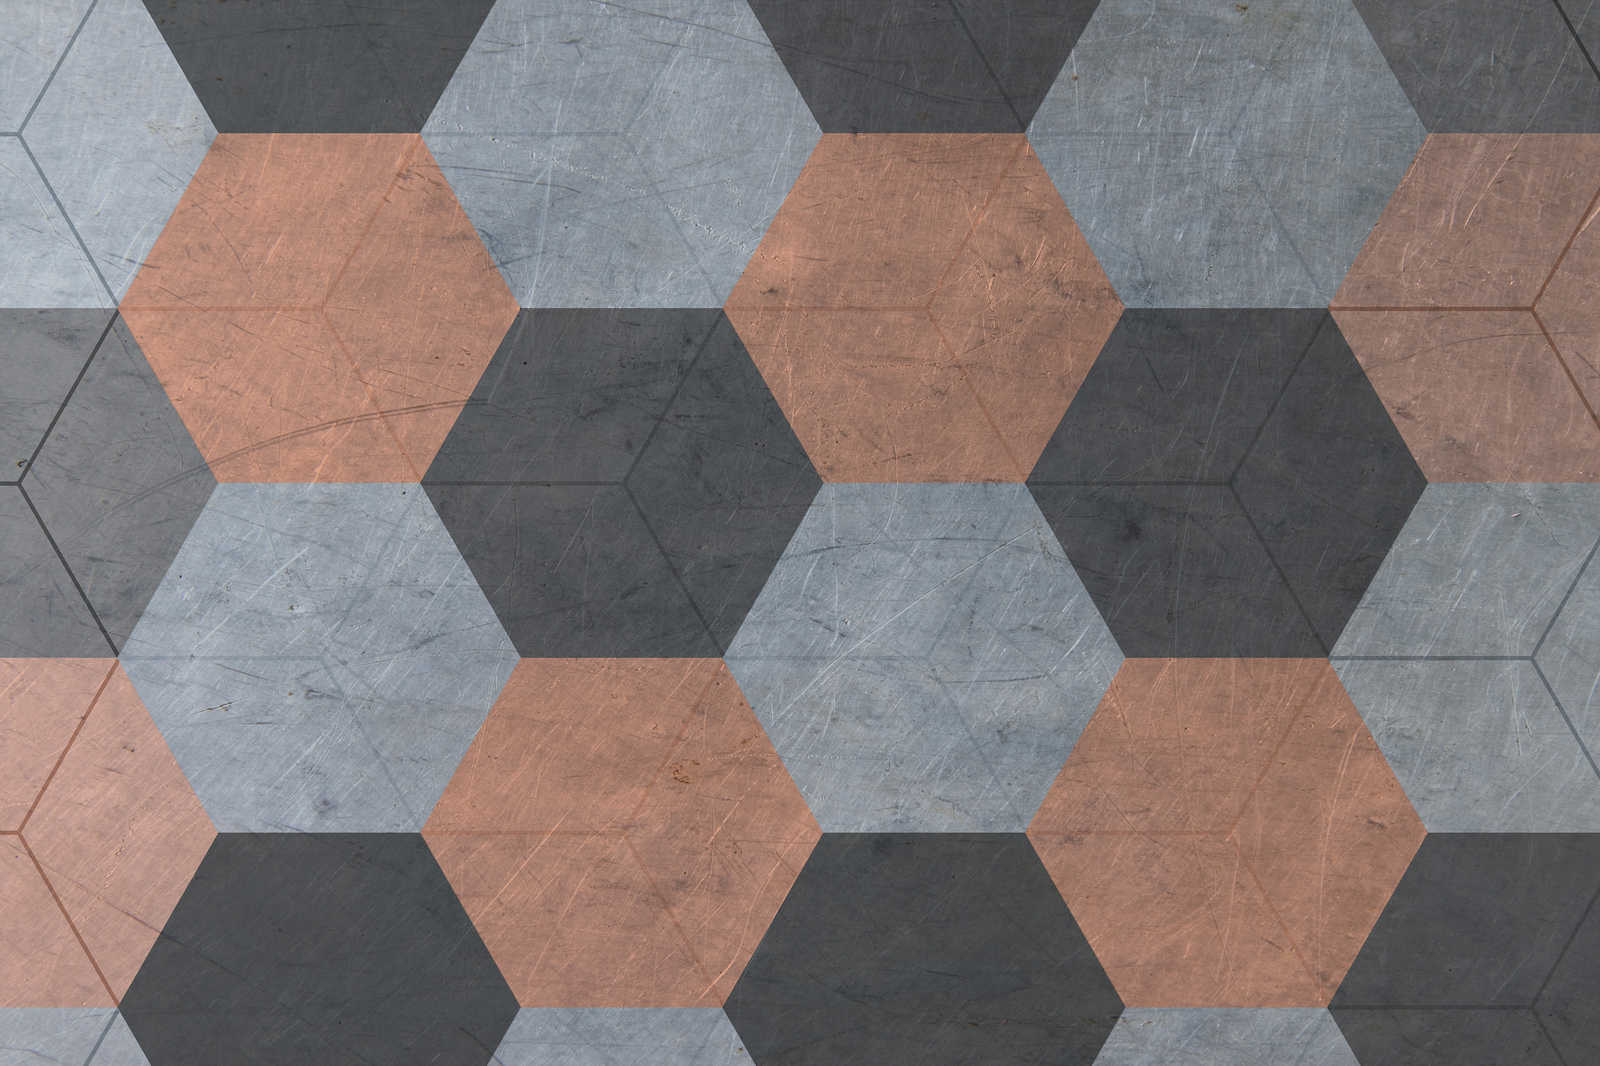             Lienzo de azulejos hexagonales de estilo vintage - 0,90 m x 0,60 m
        